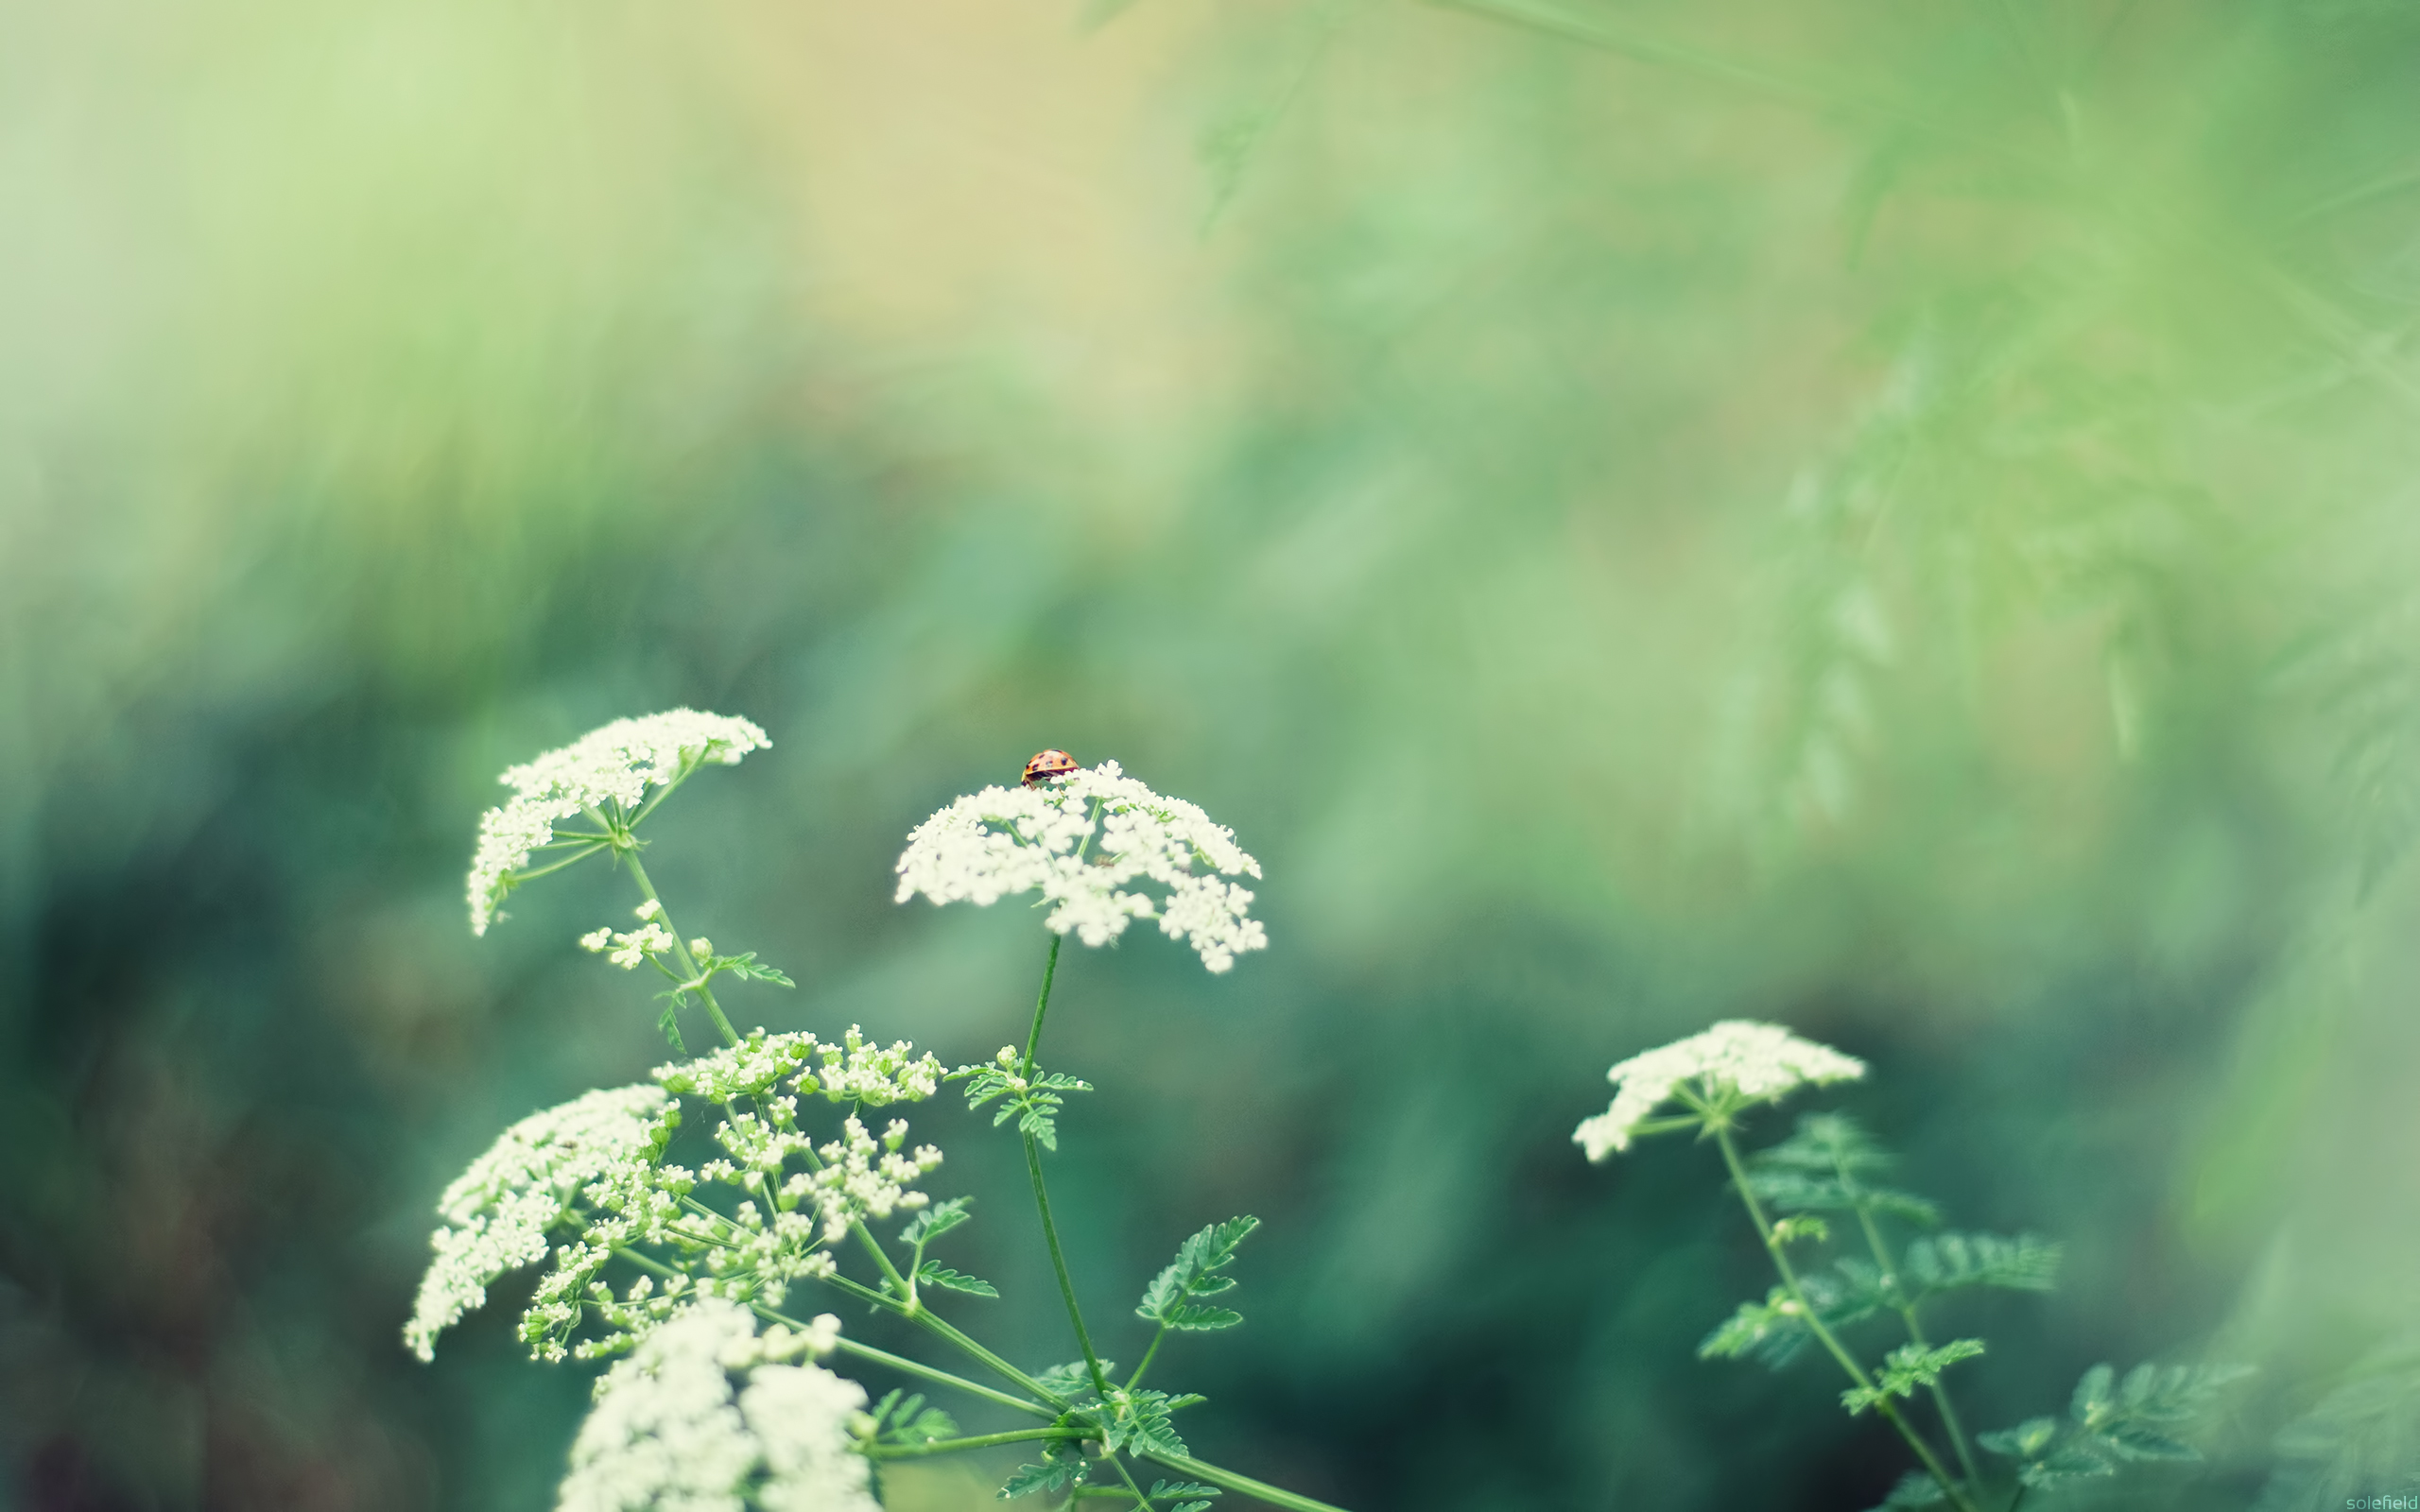 Ladybug on a White Flower